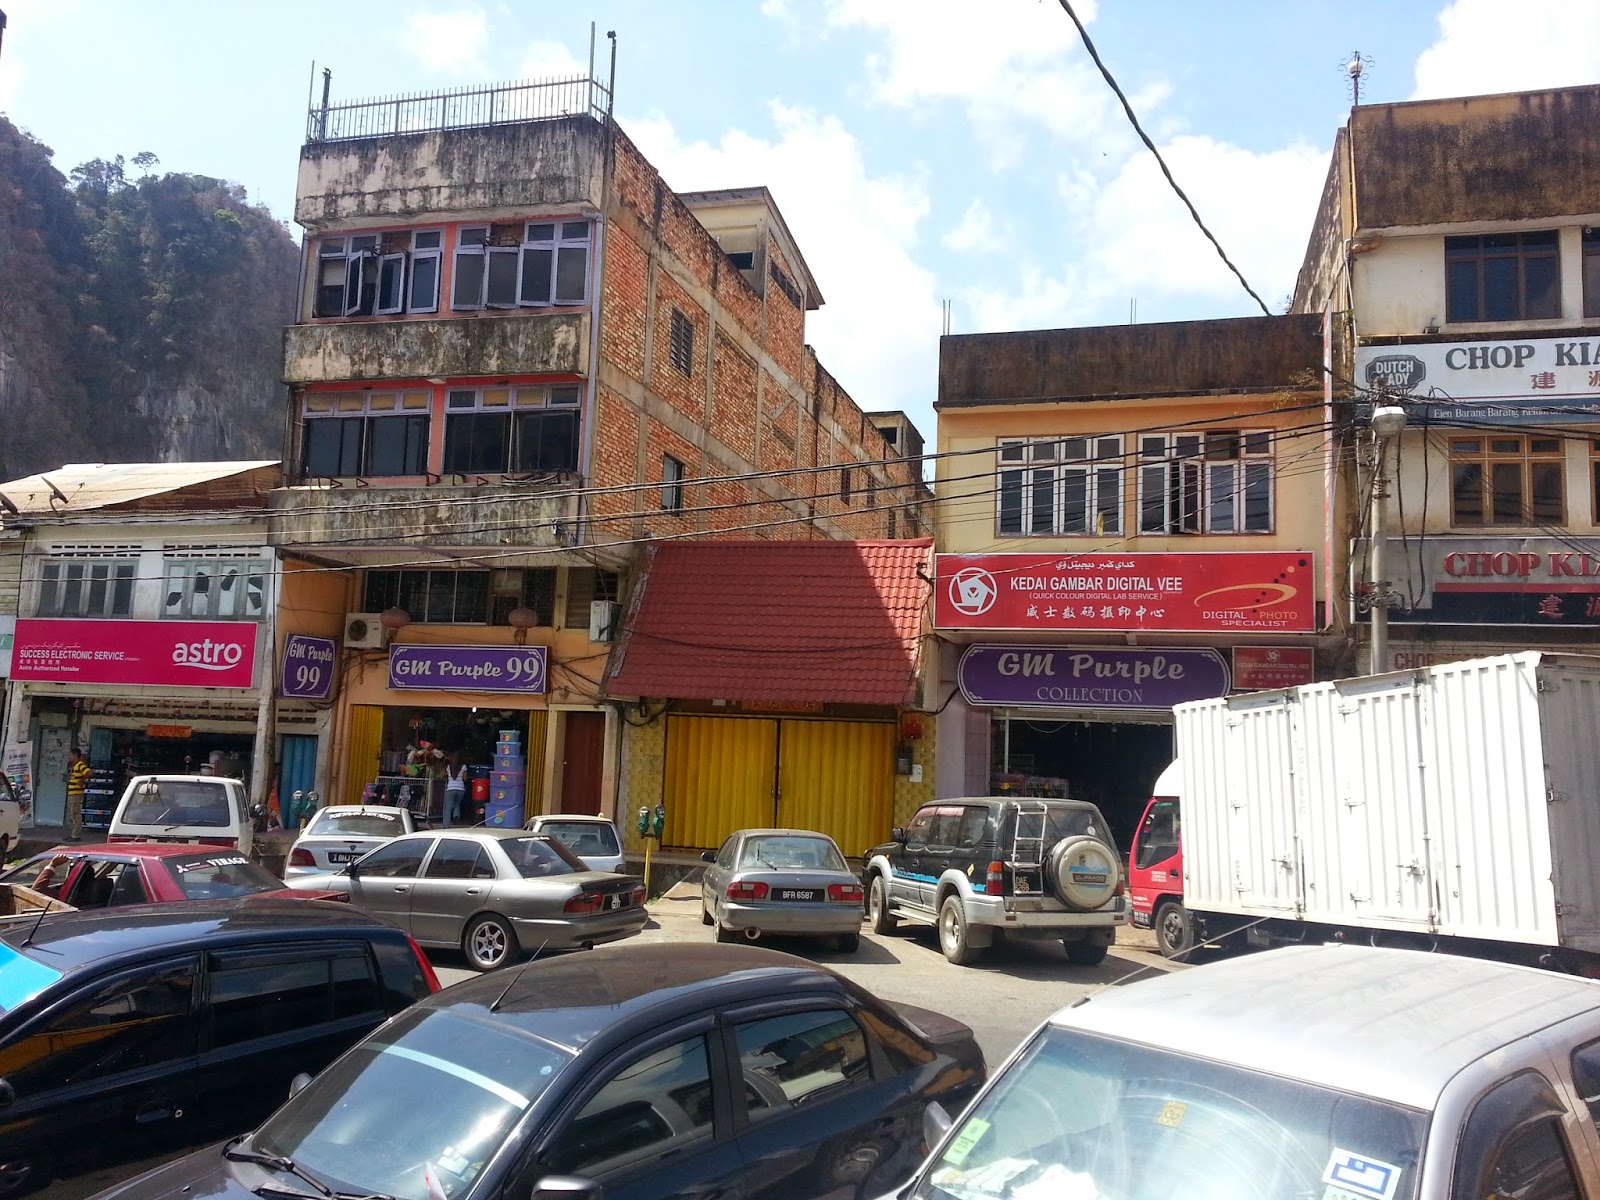 Madu3urusharta: lot kedai kosong di pekan GUA MUSANG untuk 